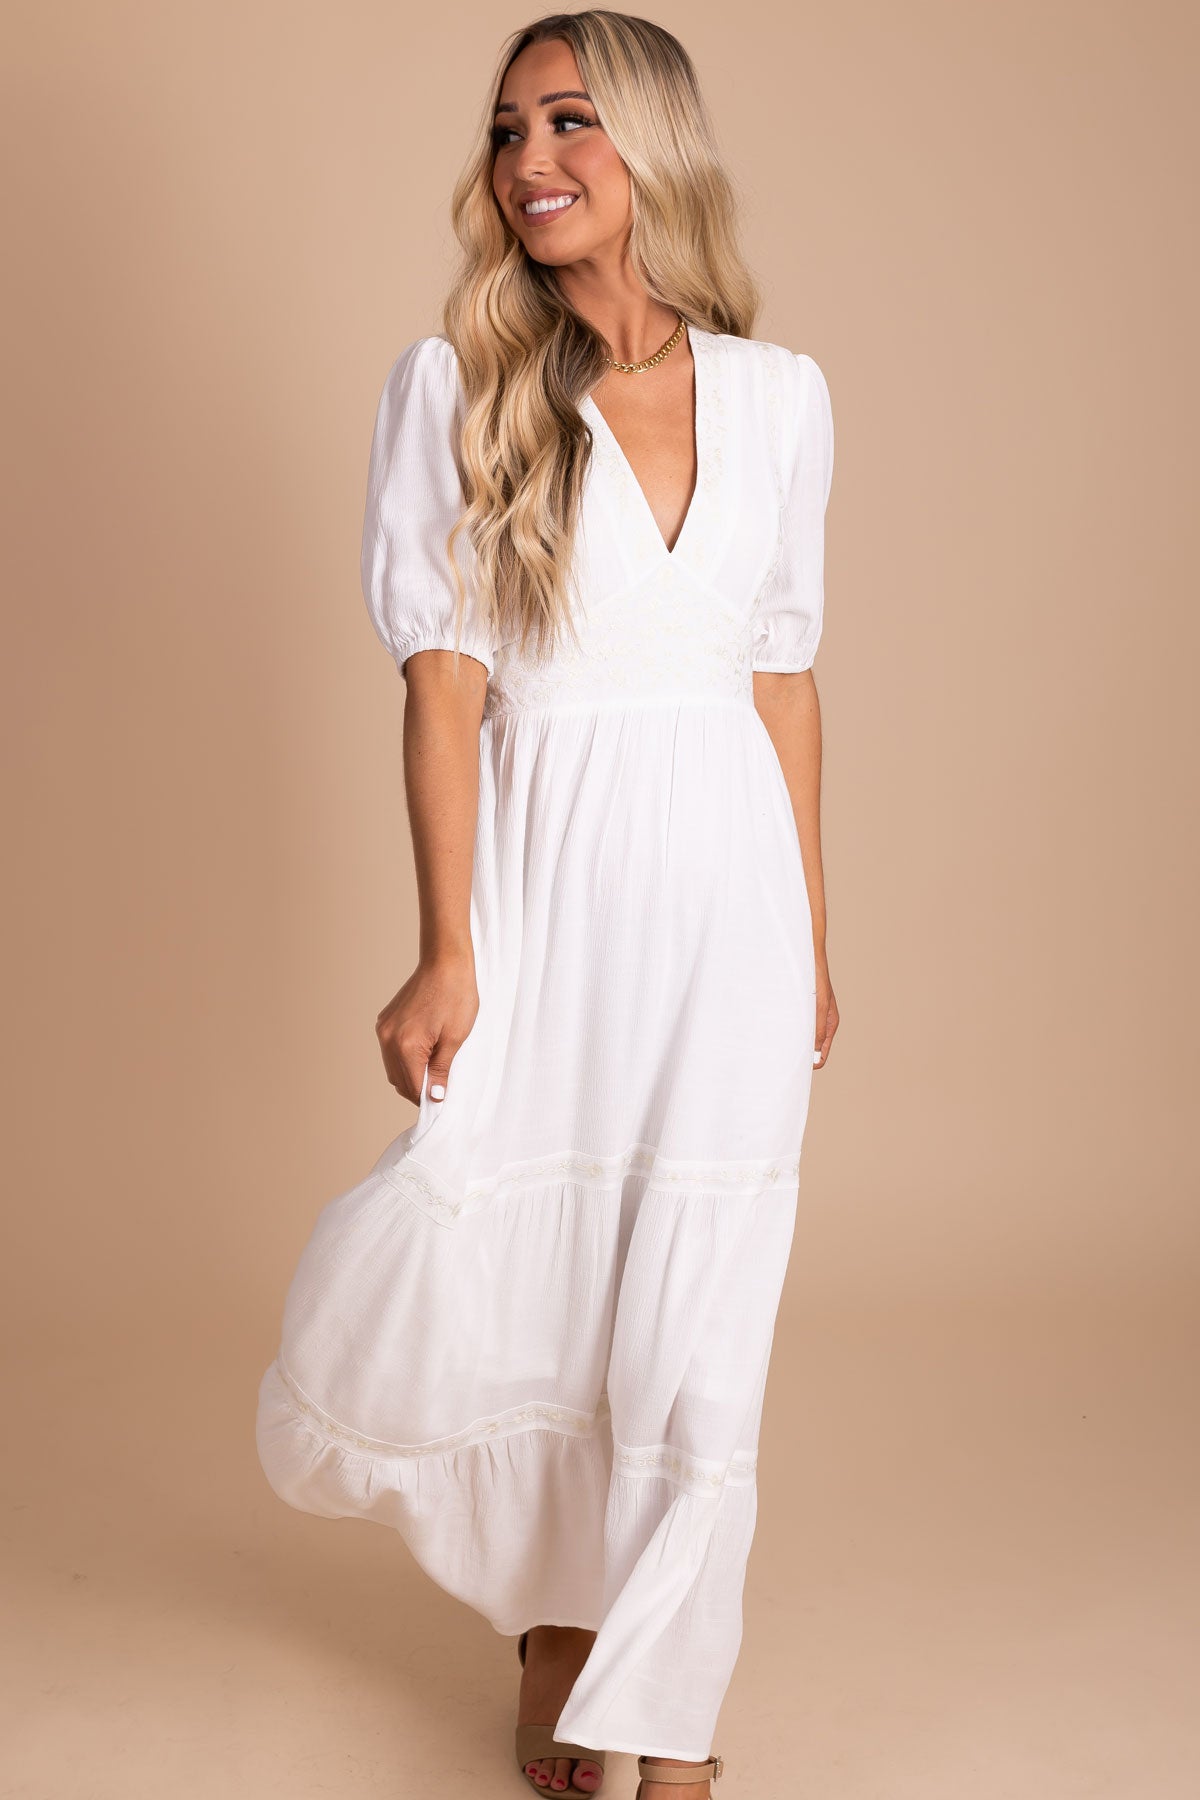 Boutique Women's White Dresses